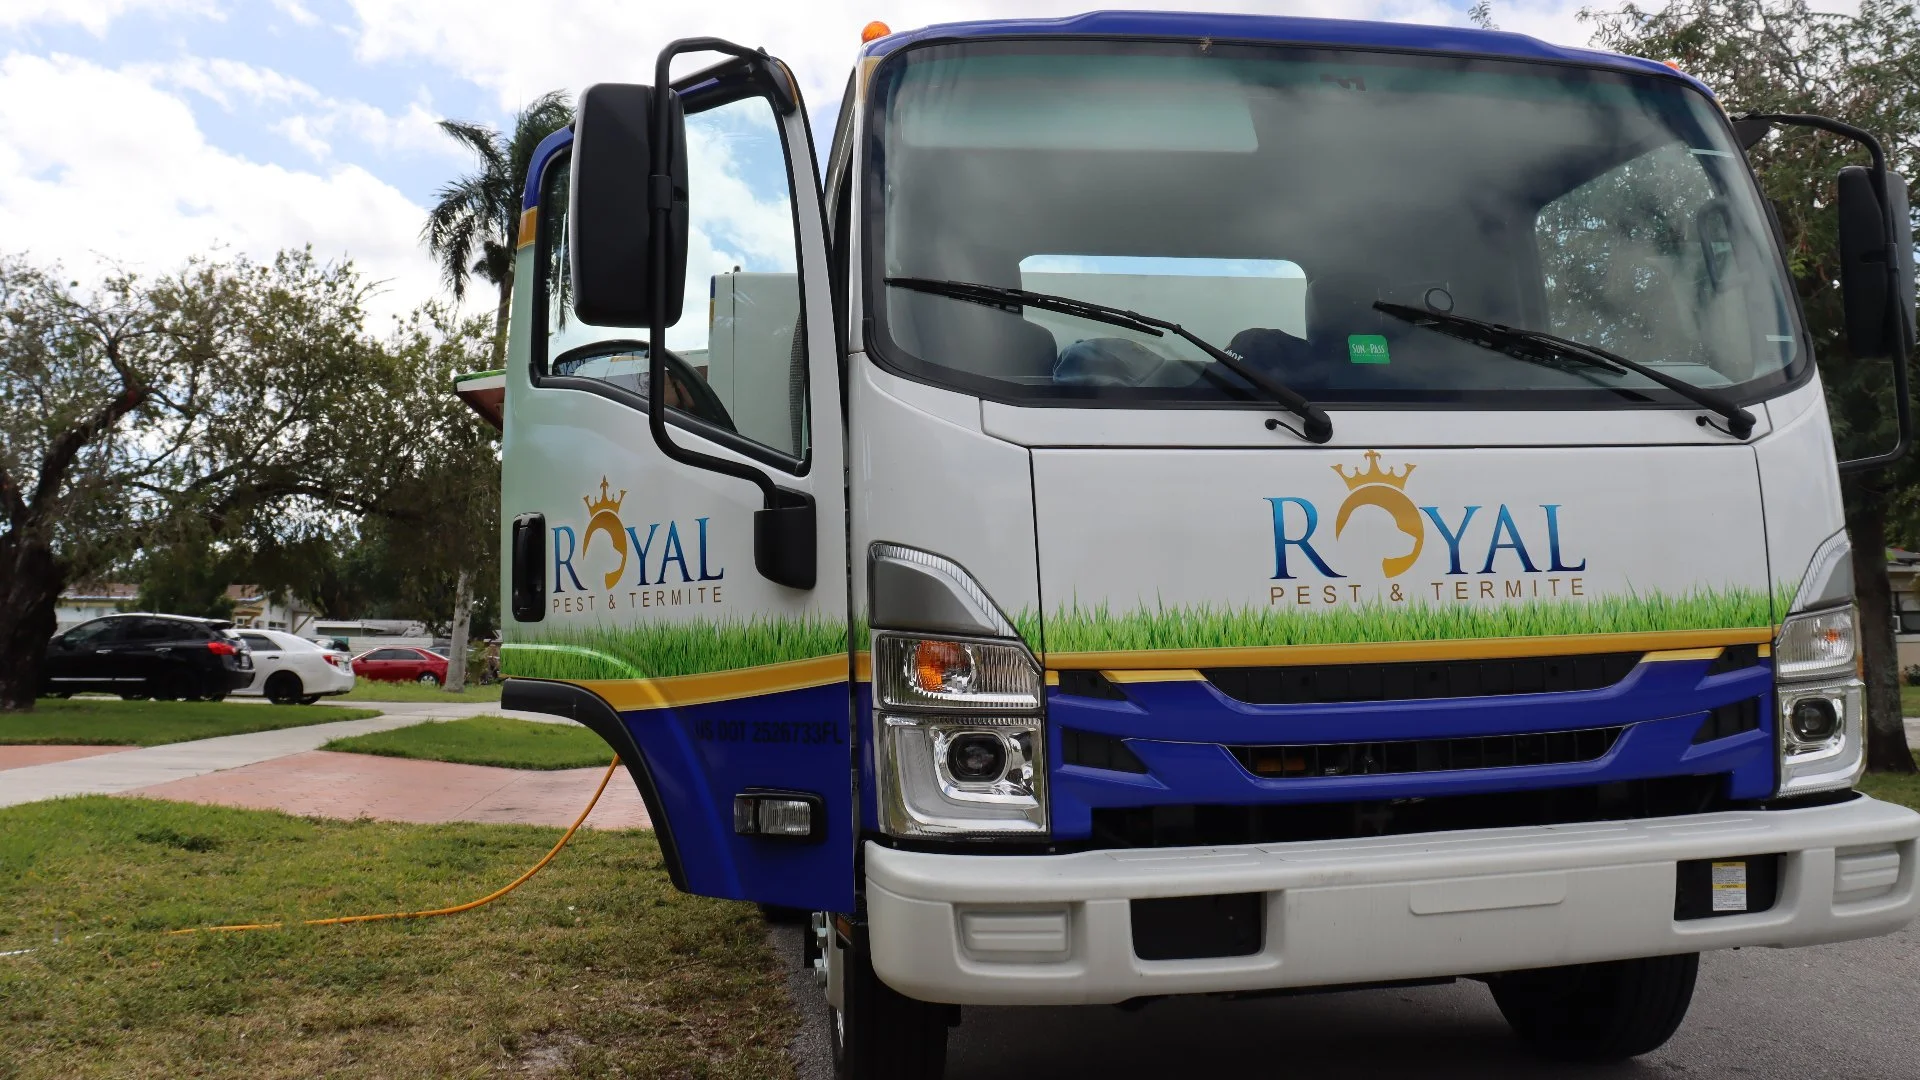 Royal Pest & Termite truck with door open in Miramar, FL.